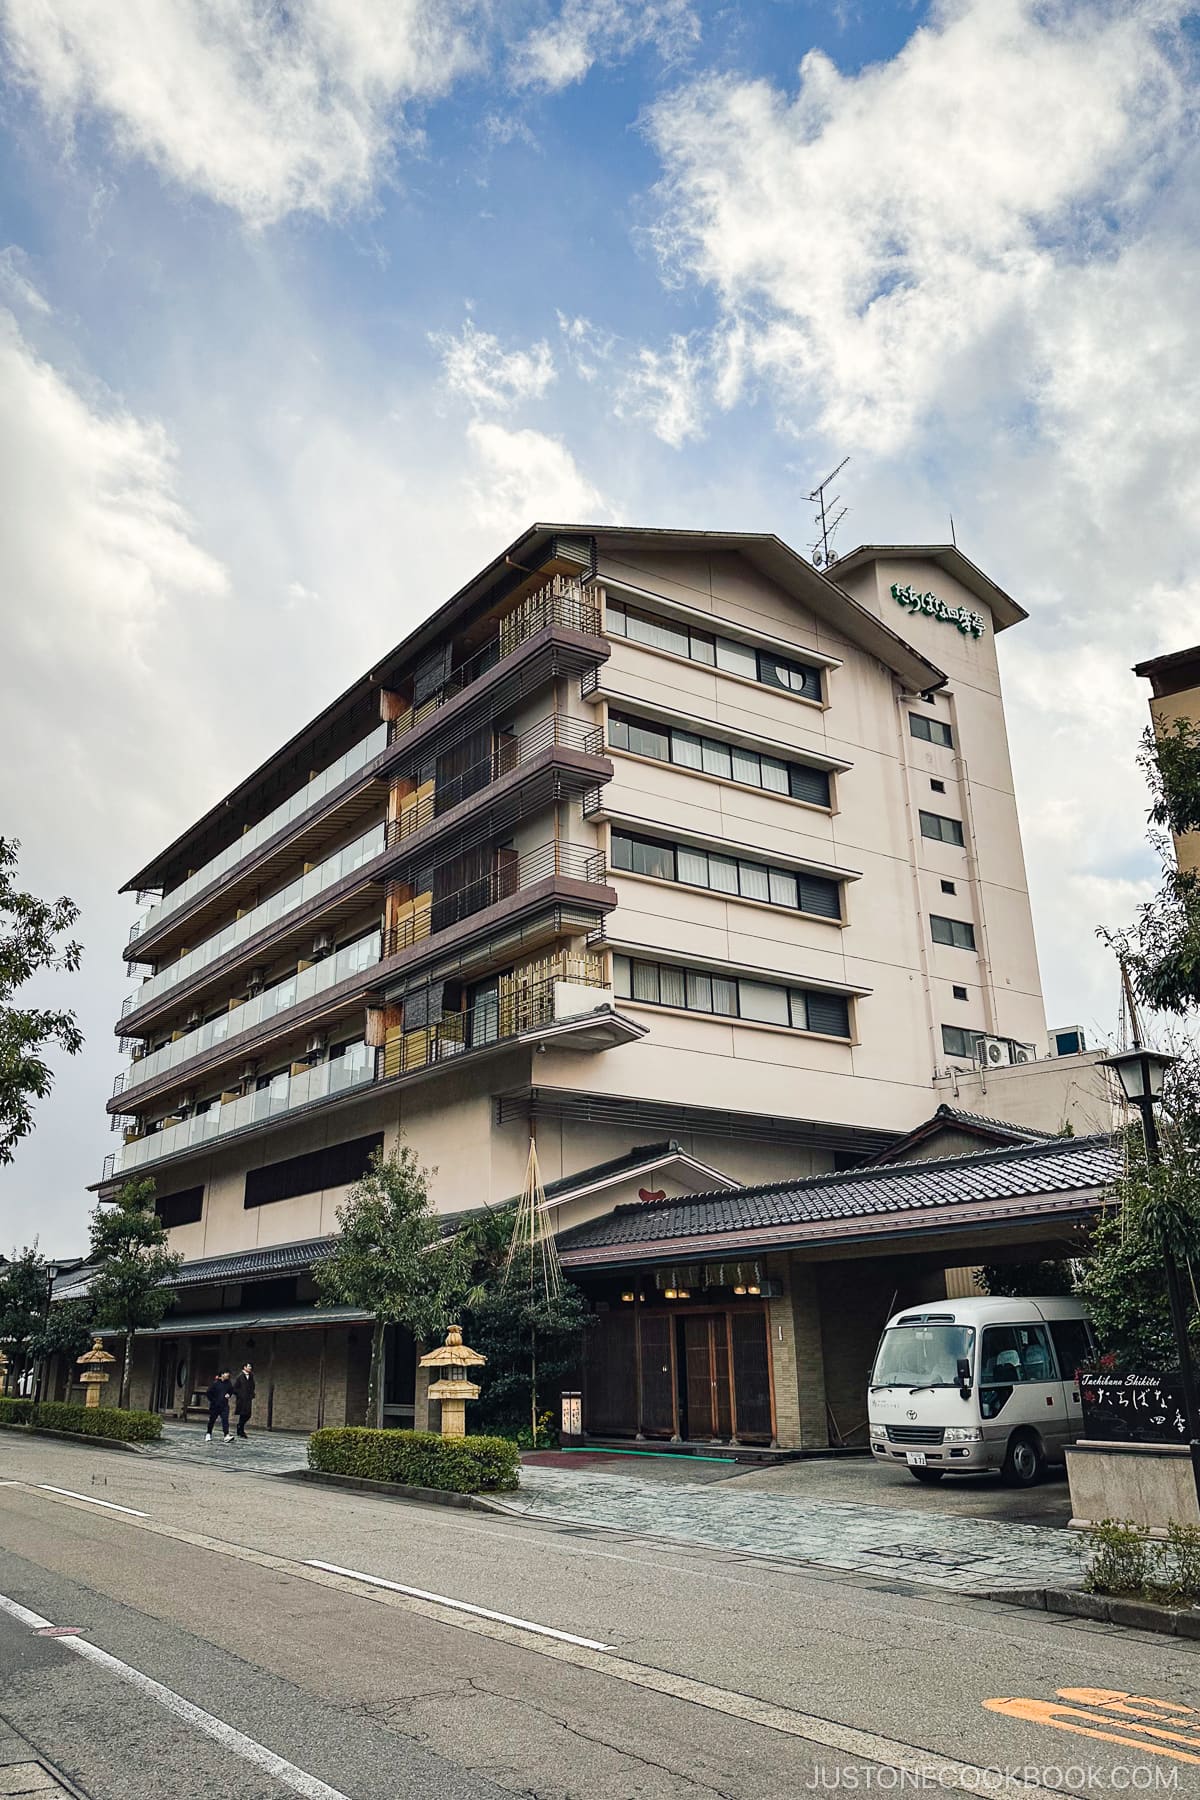 Tachibana Shikitei hotel